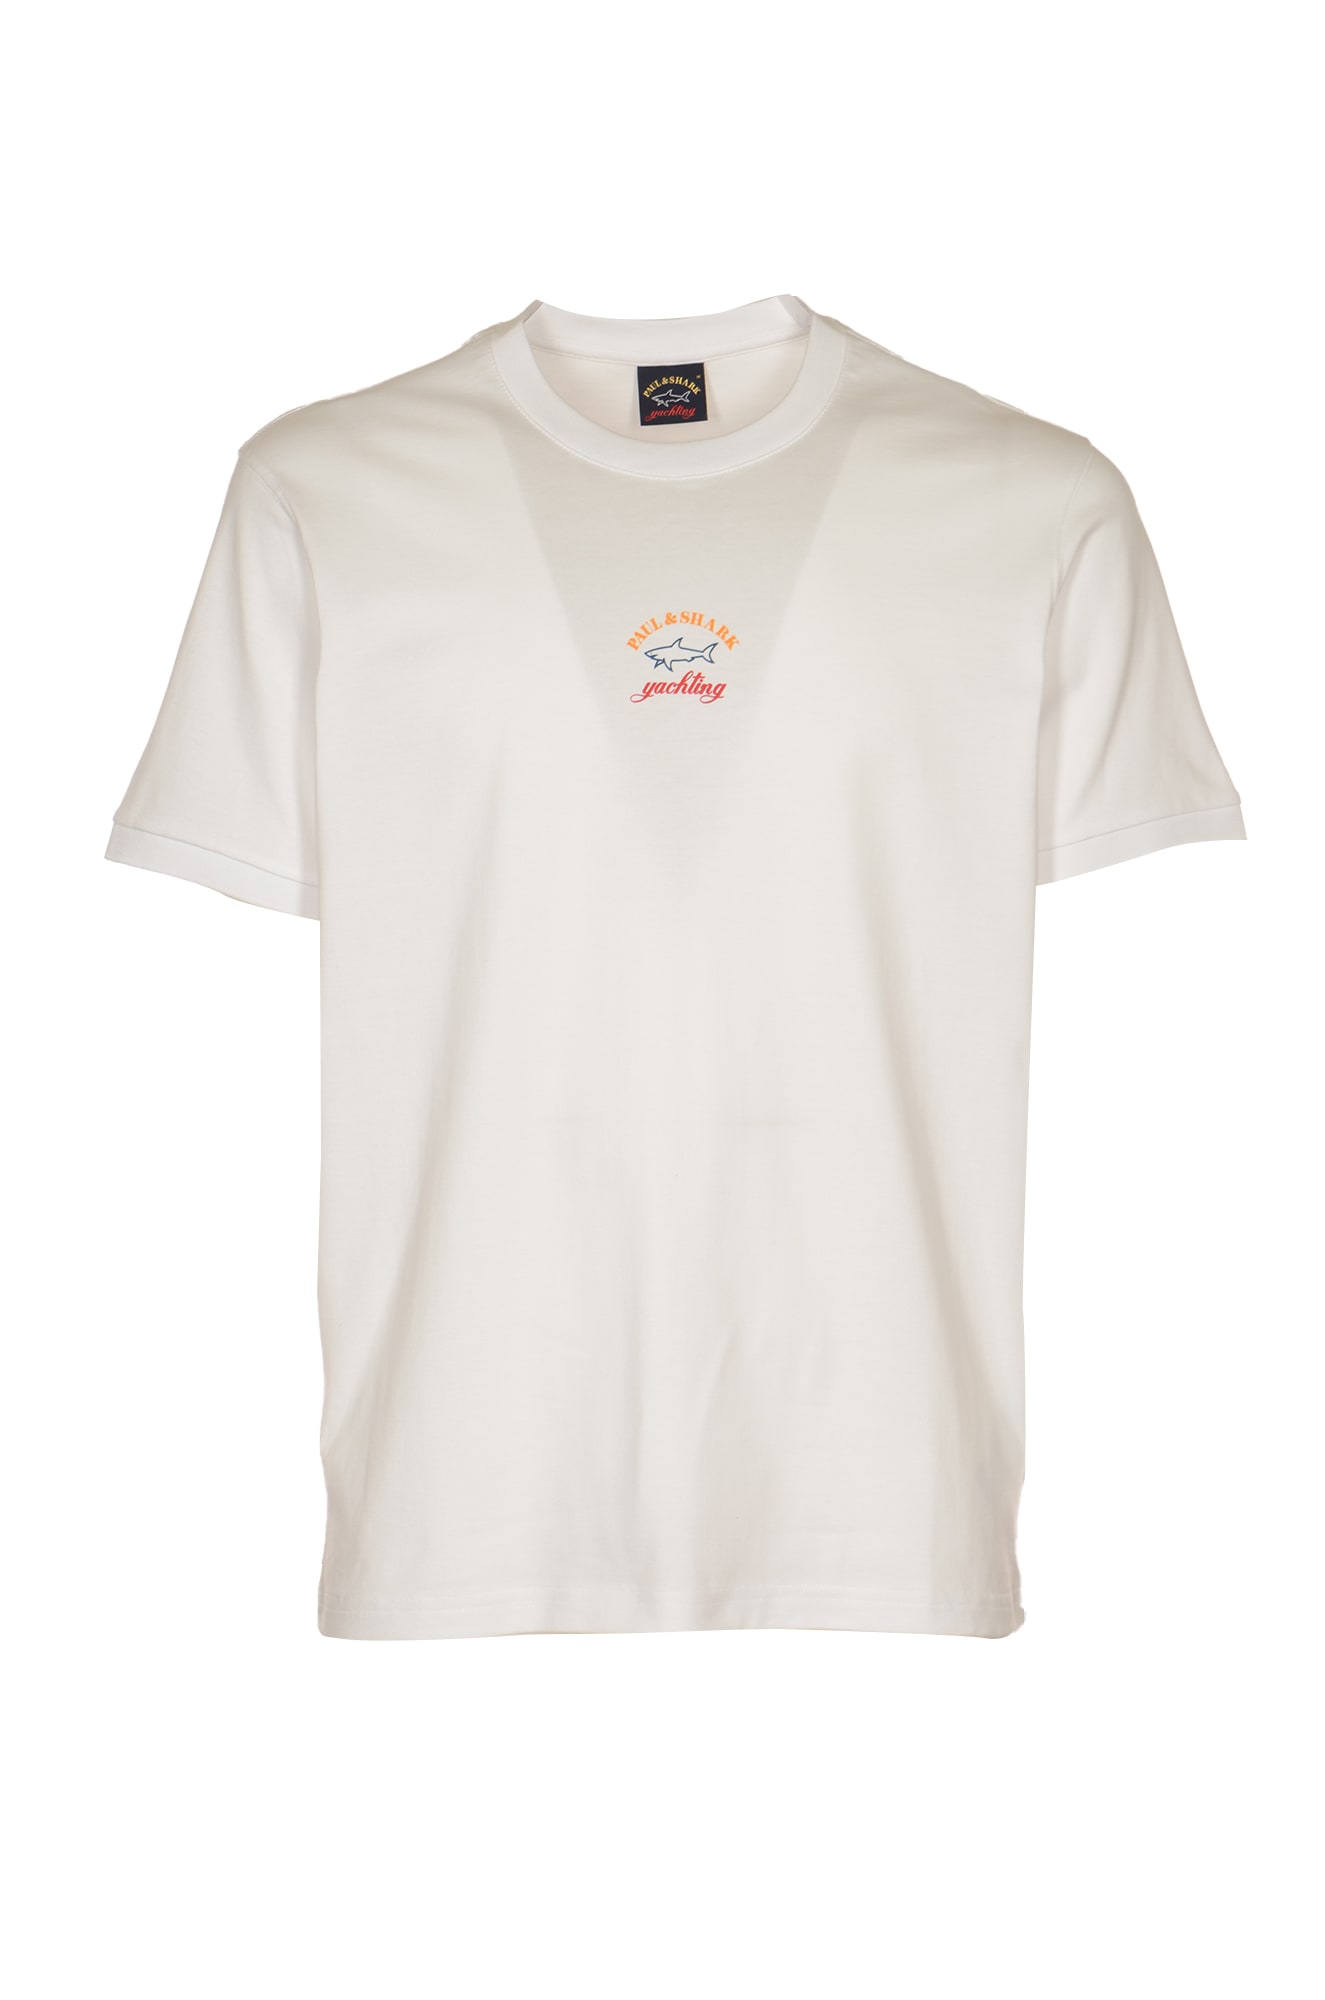 Paul&amp;shark Logo Print T-shirt In White